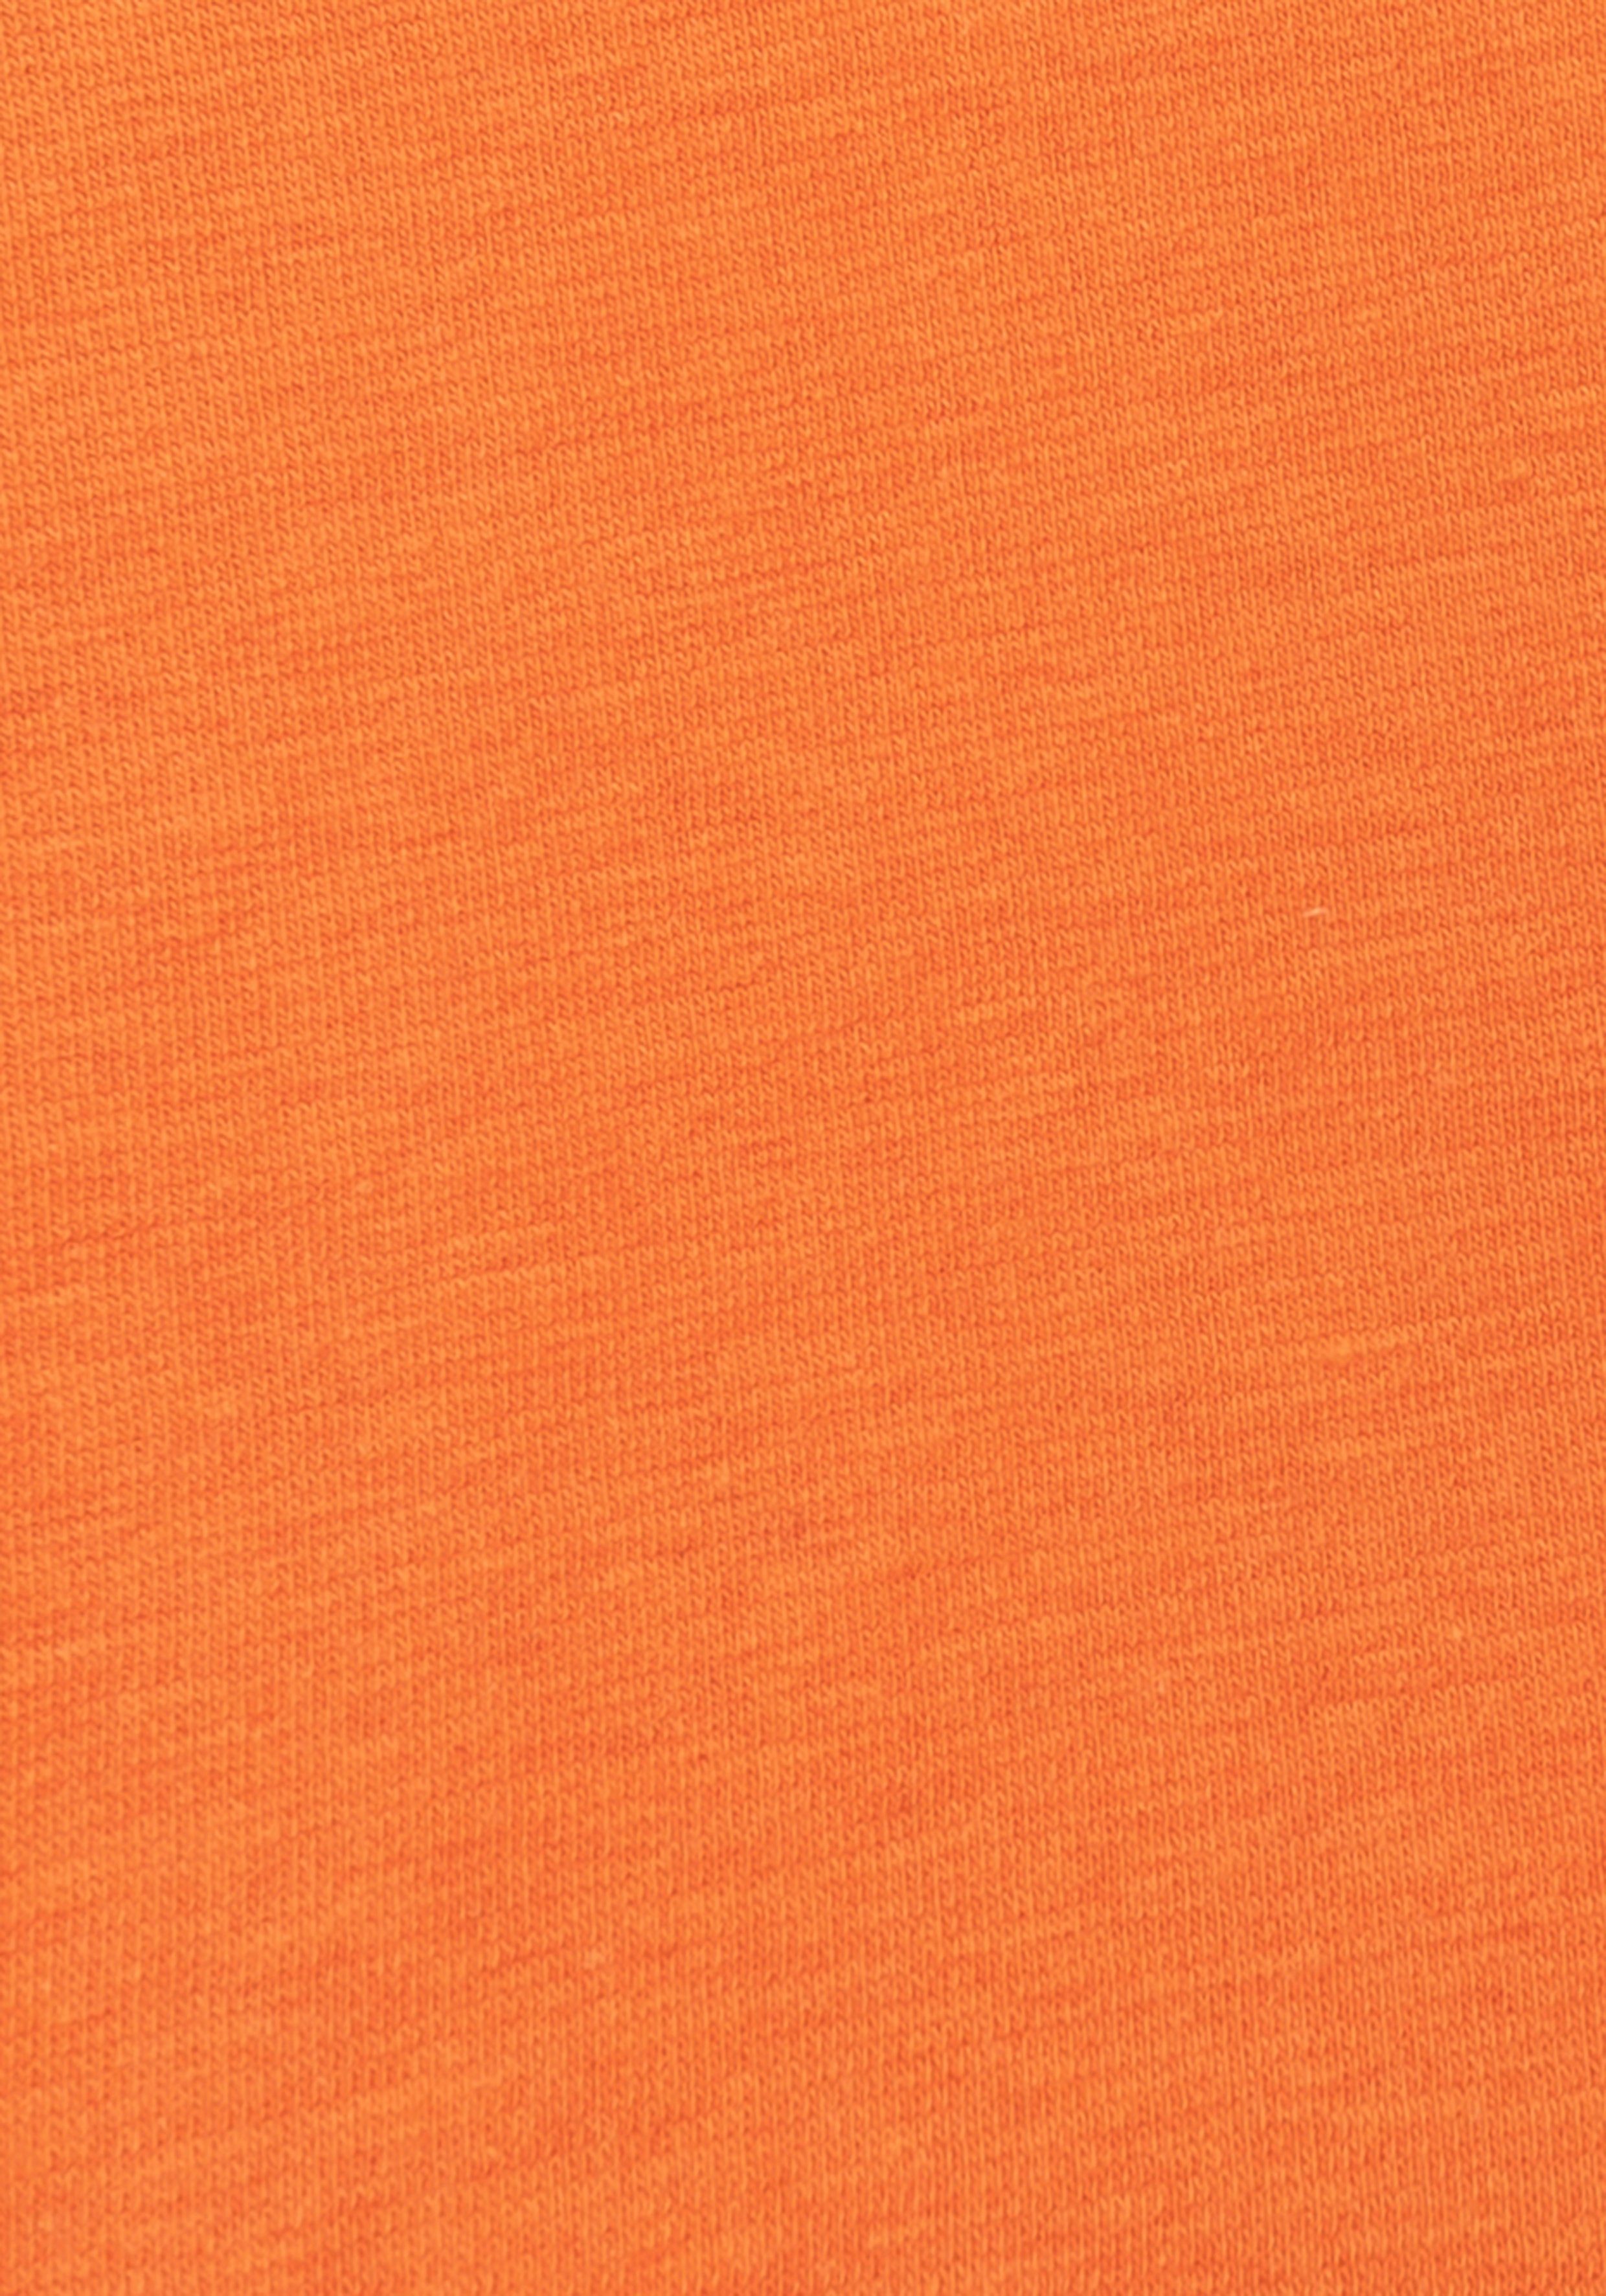 orange-marine, blau-marine, coolem marine-orange für Auftritt mit Colorblocking marine-blau, H.I.S Boxer 4-St) einen (Packung, sportlichen